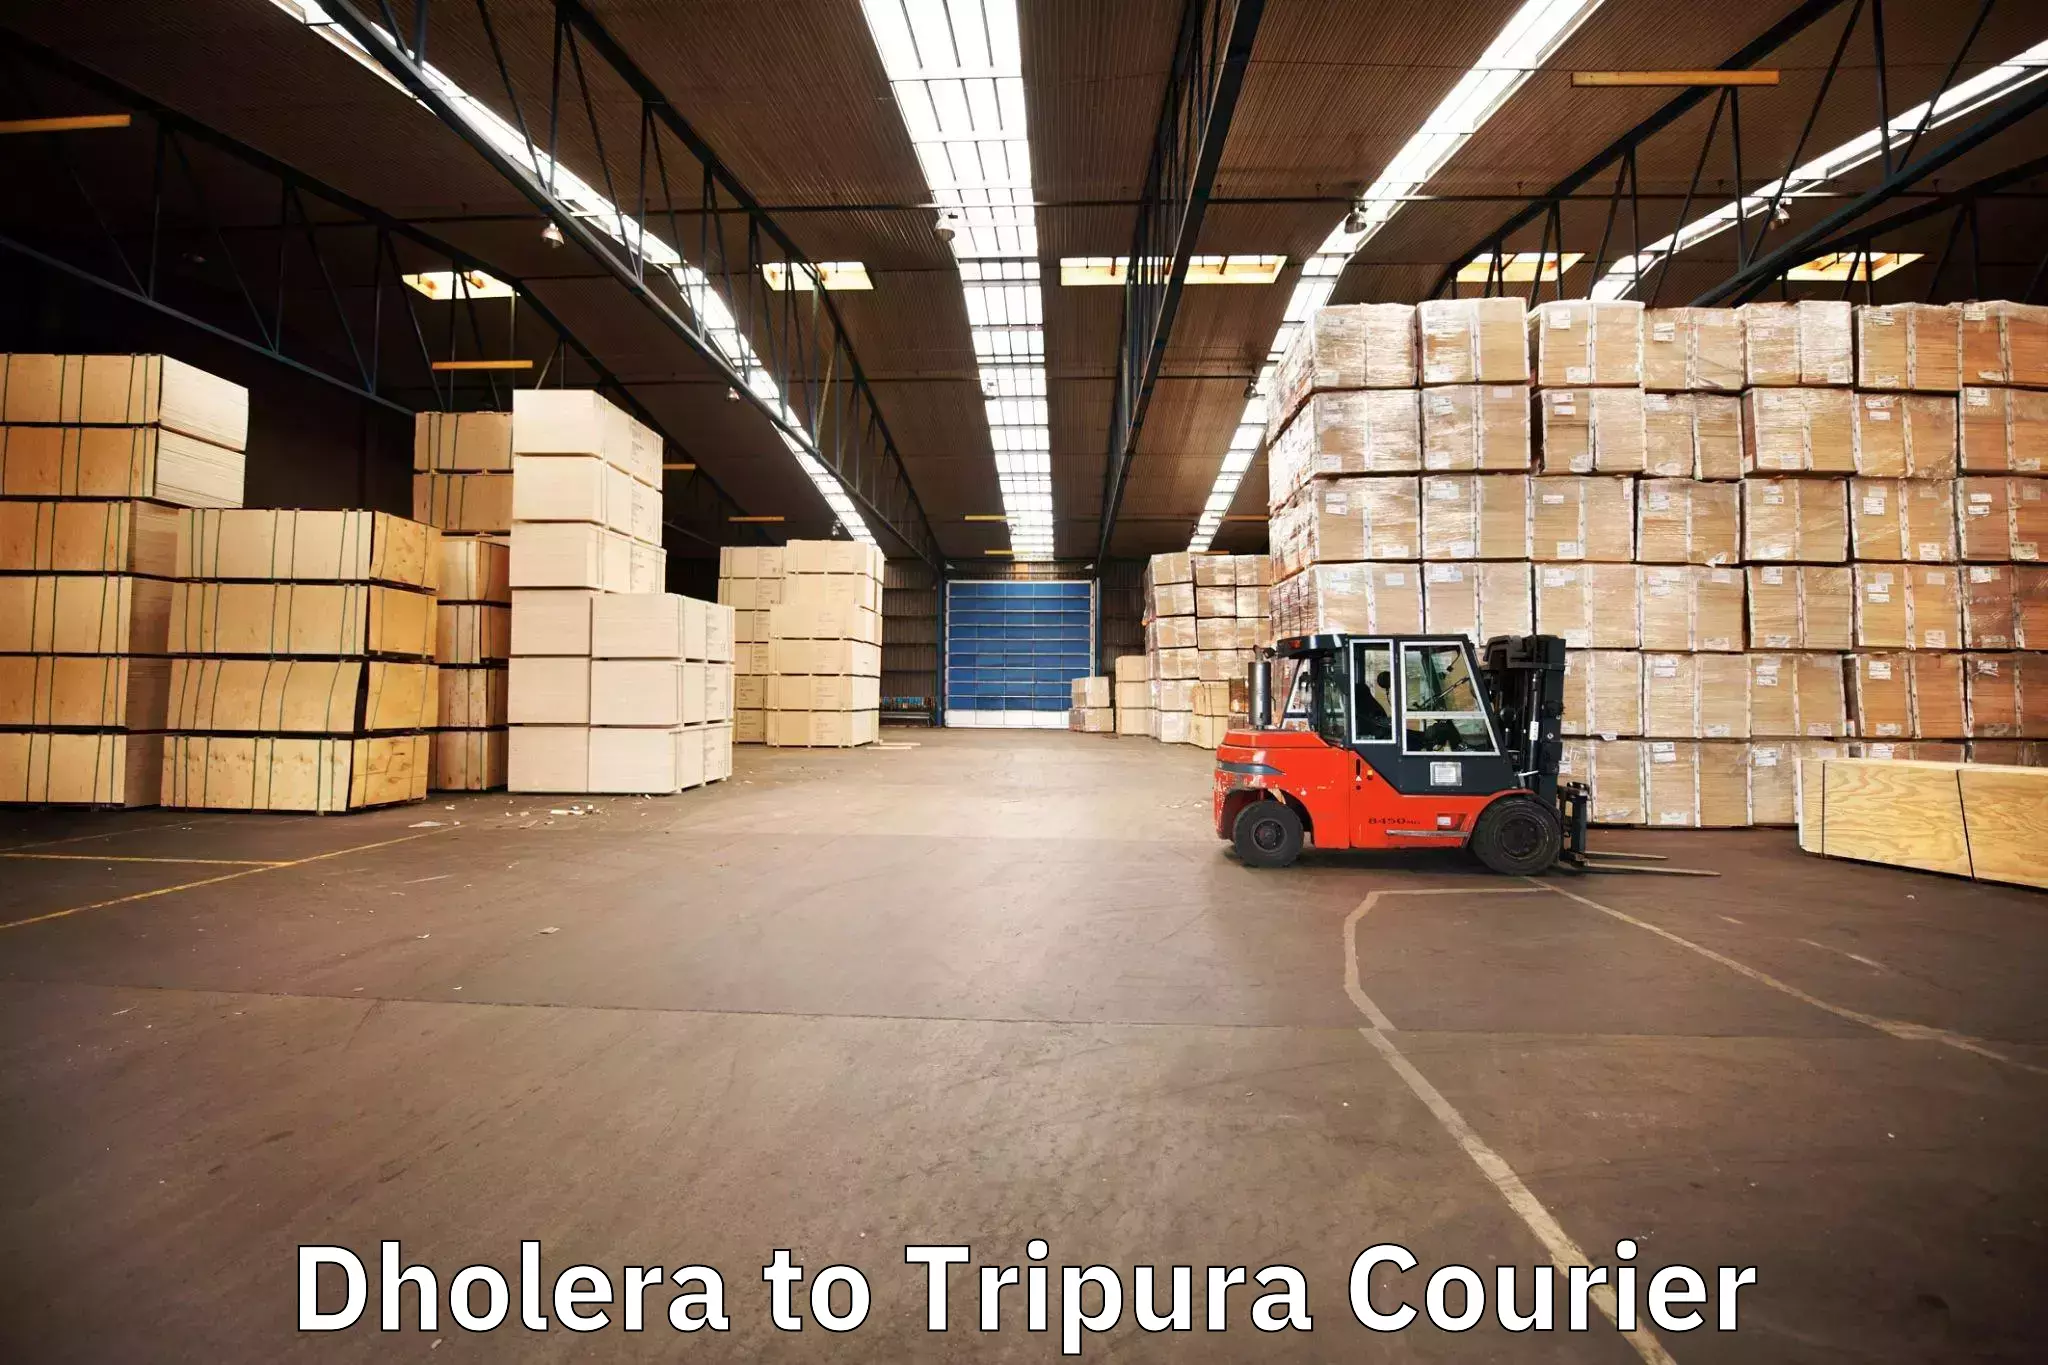 Safe furniture transport in Dholera to Udaipur Tripura